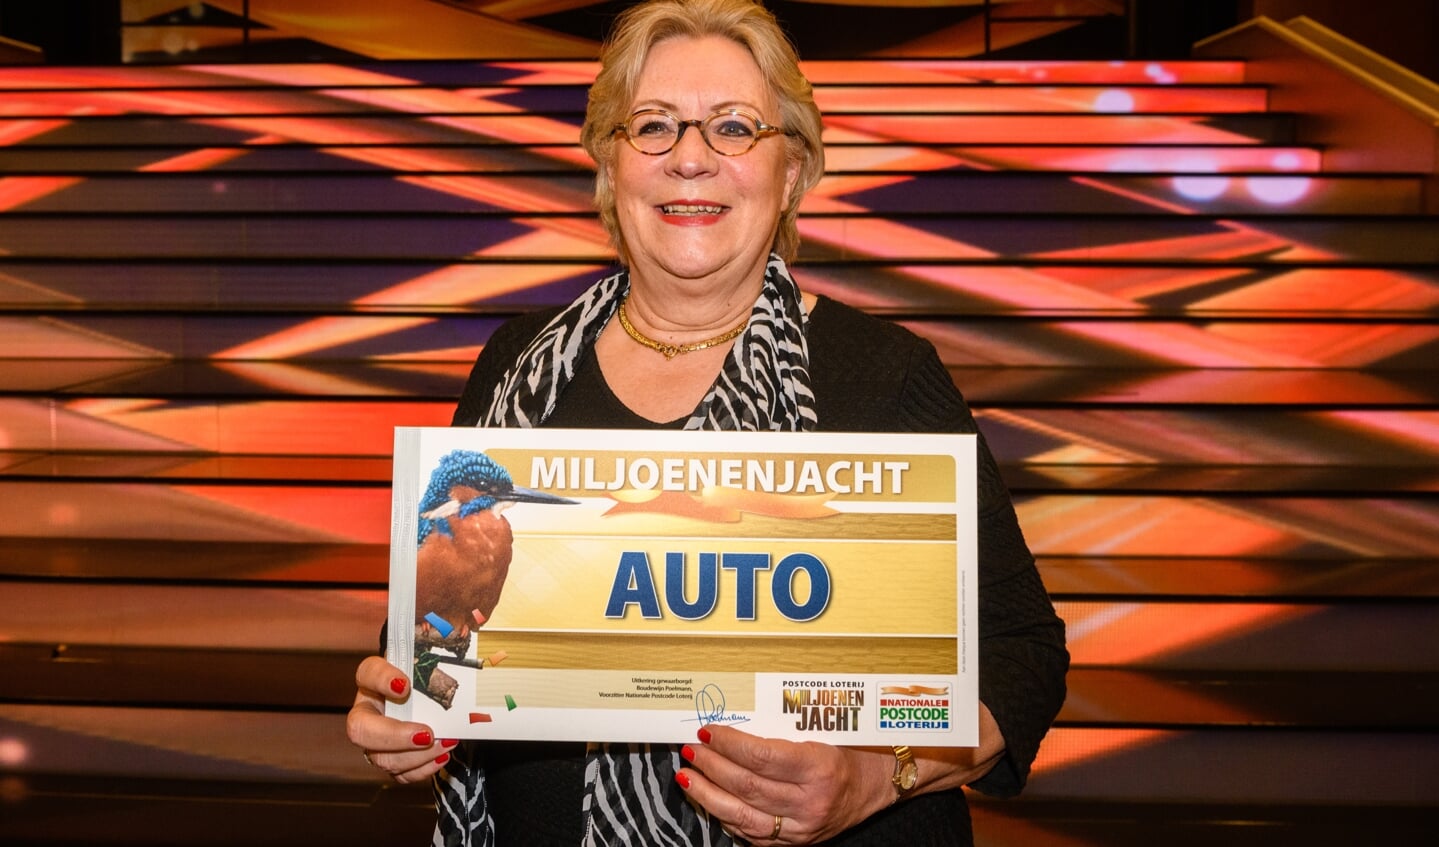 Lida uit Oegstgeest won een gloednieuwe auto in eerste show Postcode Loterij Miljoenenjacht van dit voorjaar. | Foto Roy Beusker Fotografie